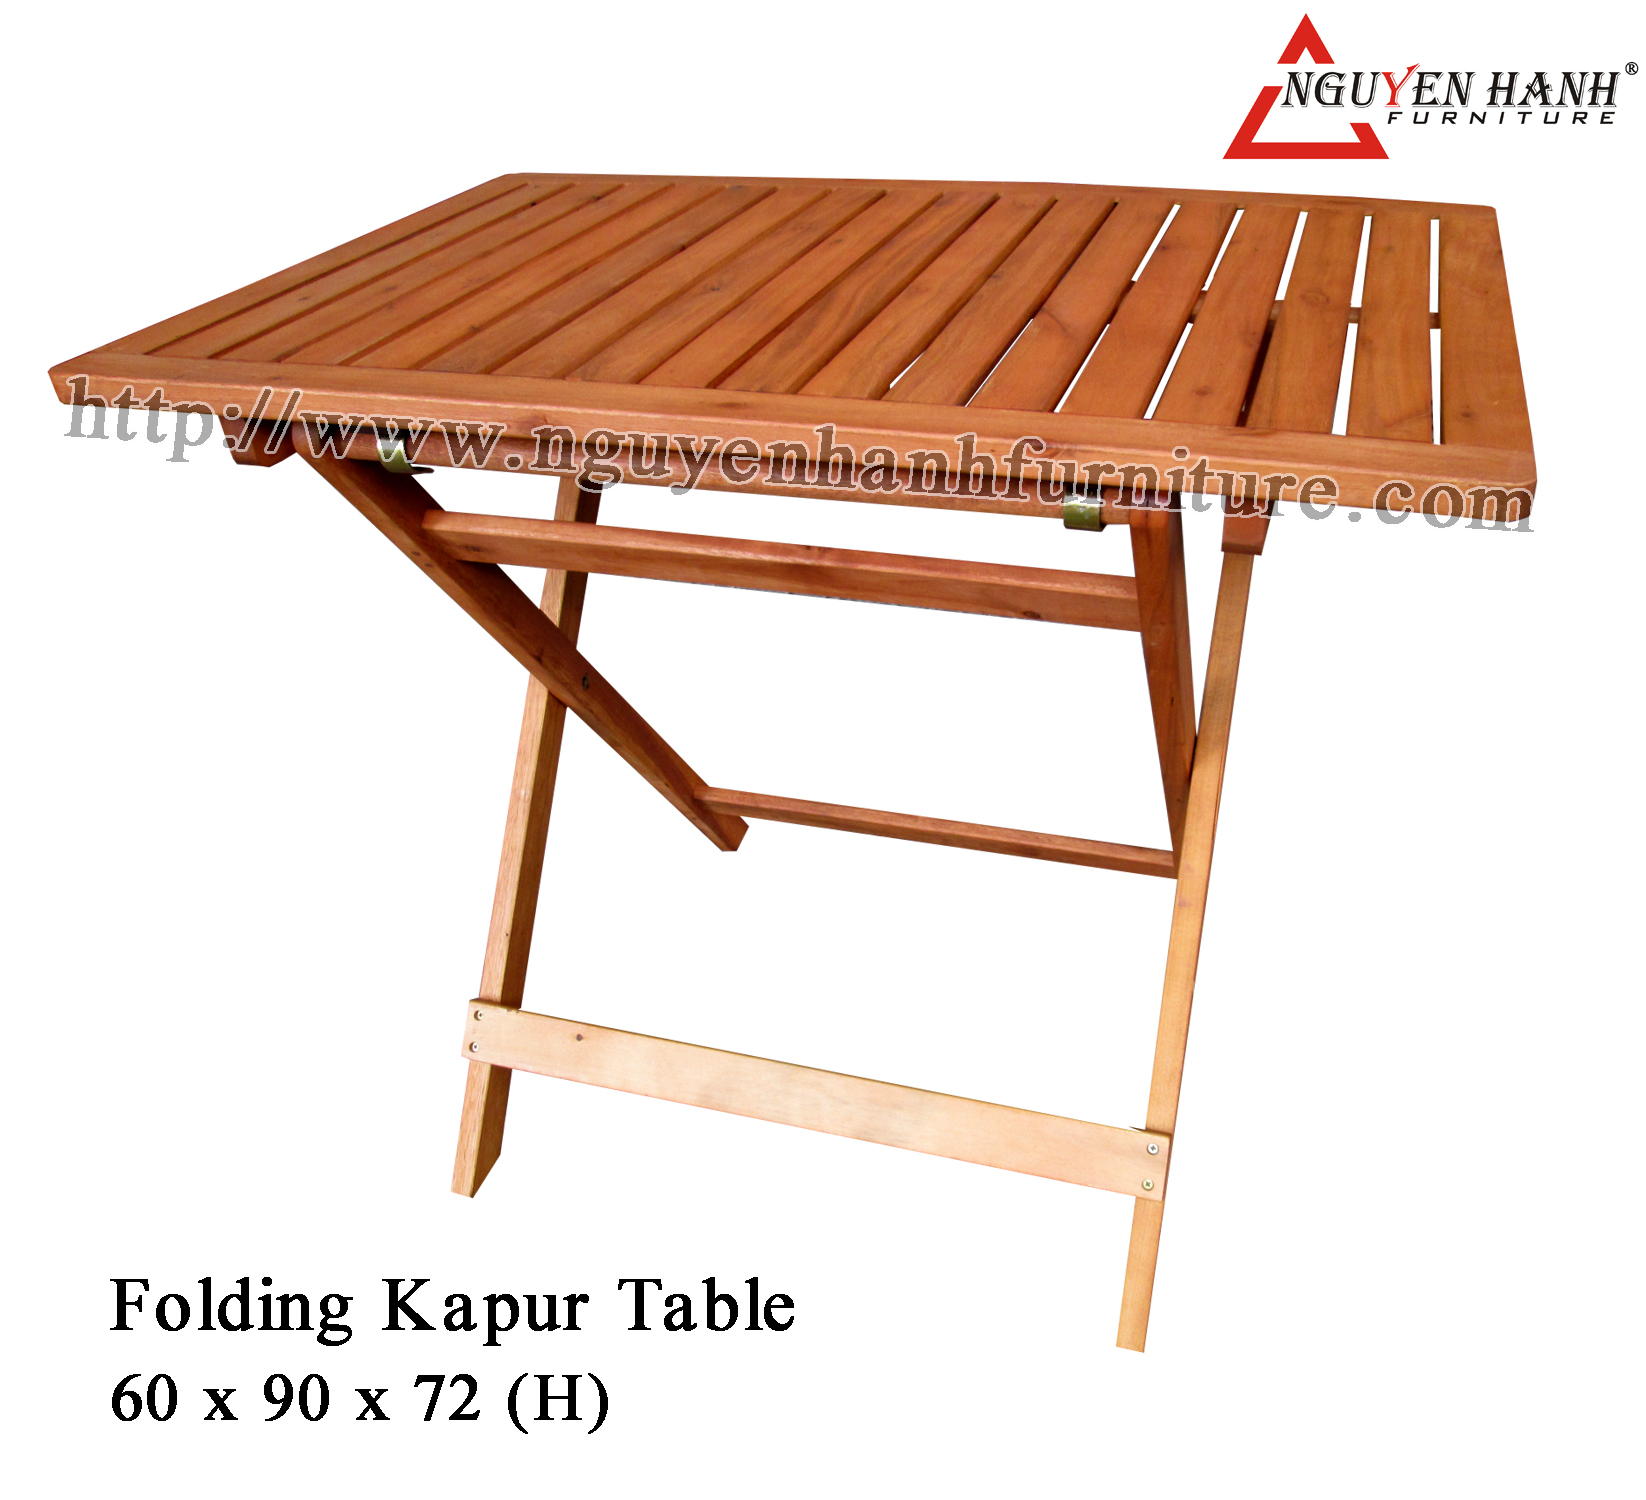 Name product: 6 x 9 folding kapur table - Dimensions: 60 x 90 x 72